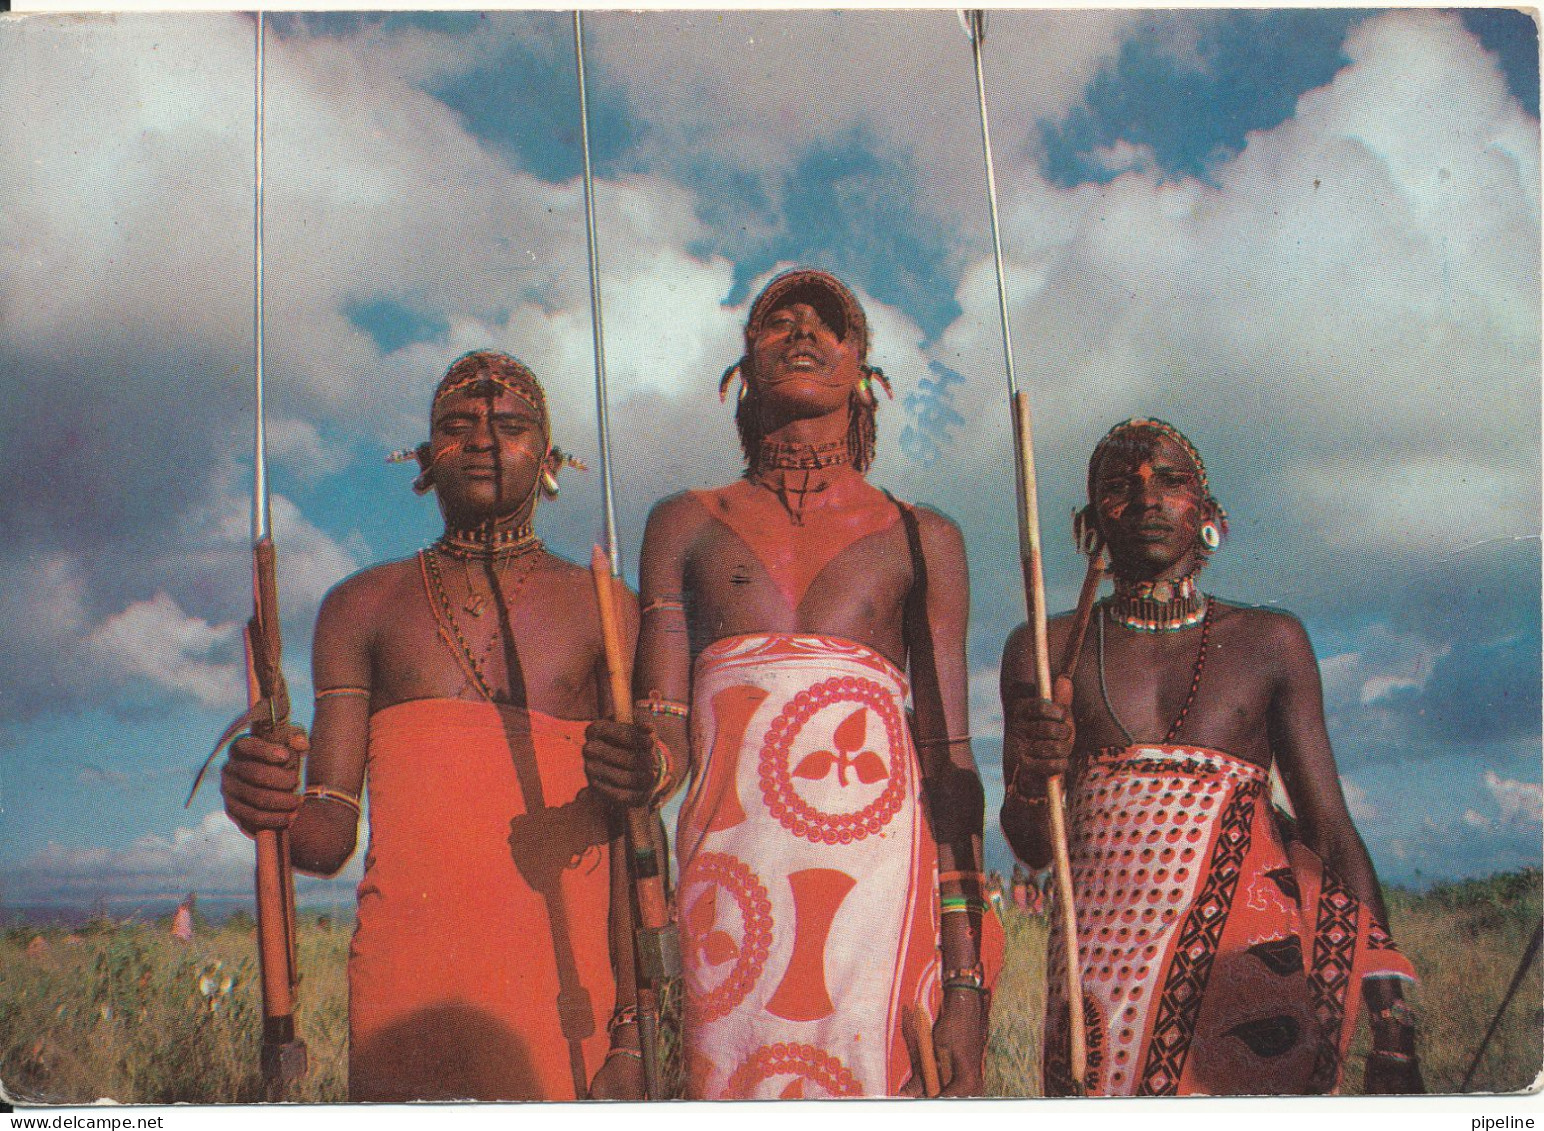 Tanzania Postcard Sent To USA 11-7-1994 (Samburu Warriors) - Tanzania